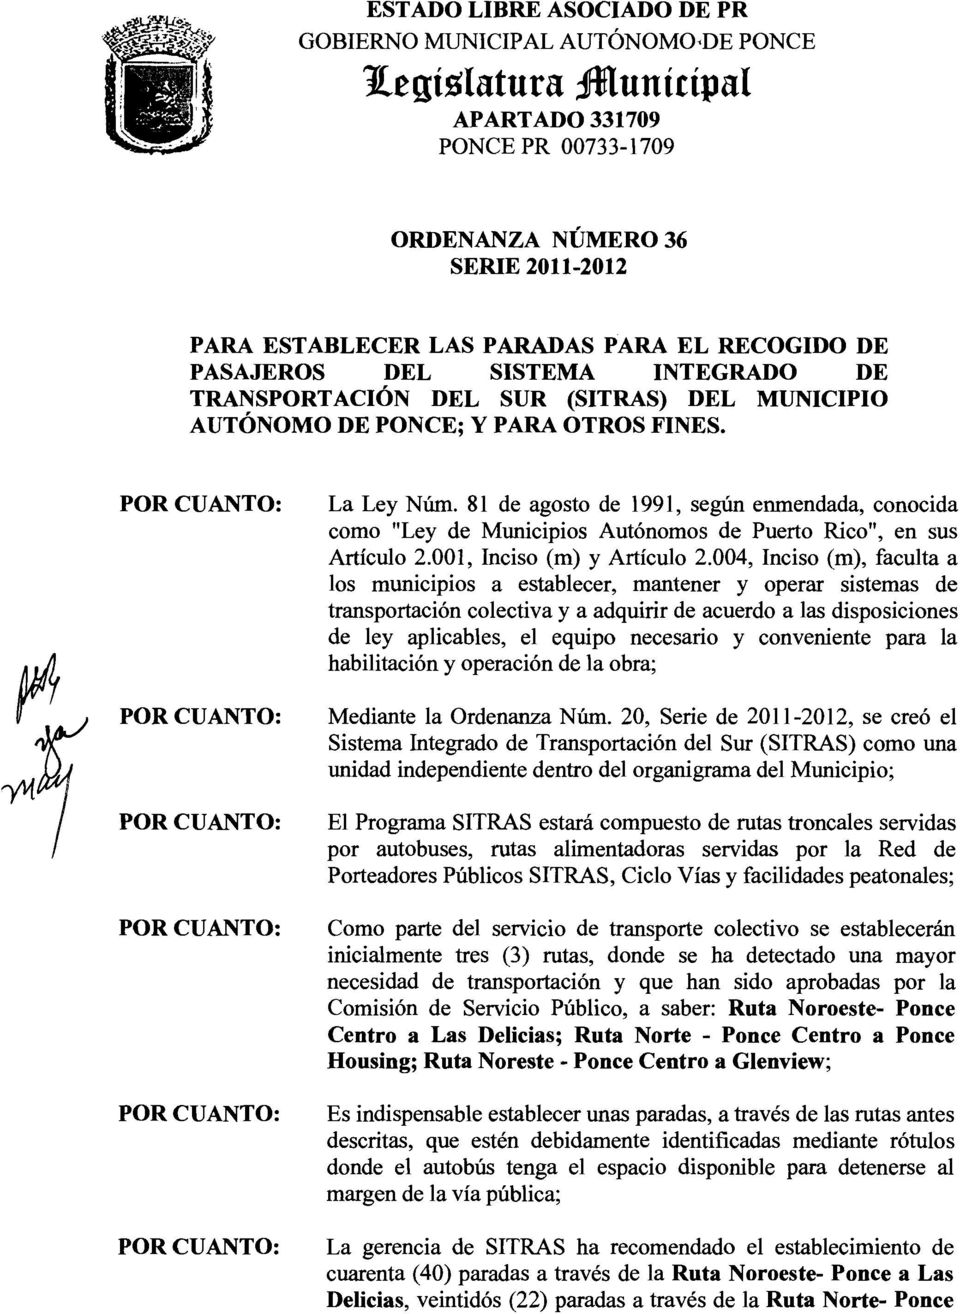 81 de agosto de 1991, según enmendada, conocida como "Ley de Municipios Autónomos de Puerto Rico", en sus Artículo 2.001, Inciso (m) y Artículo 2.